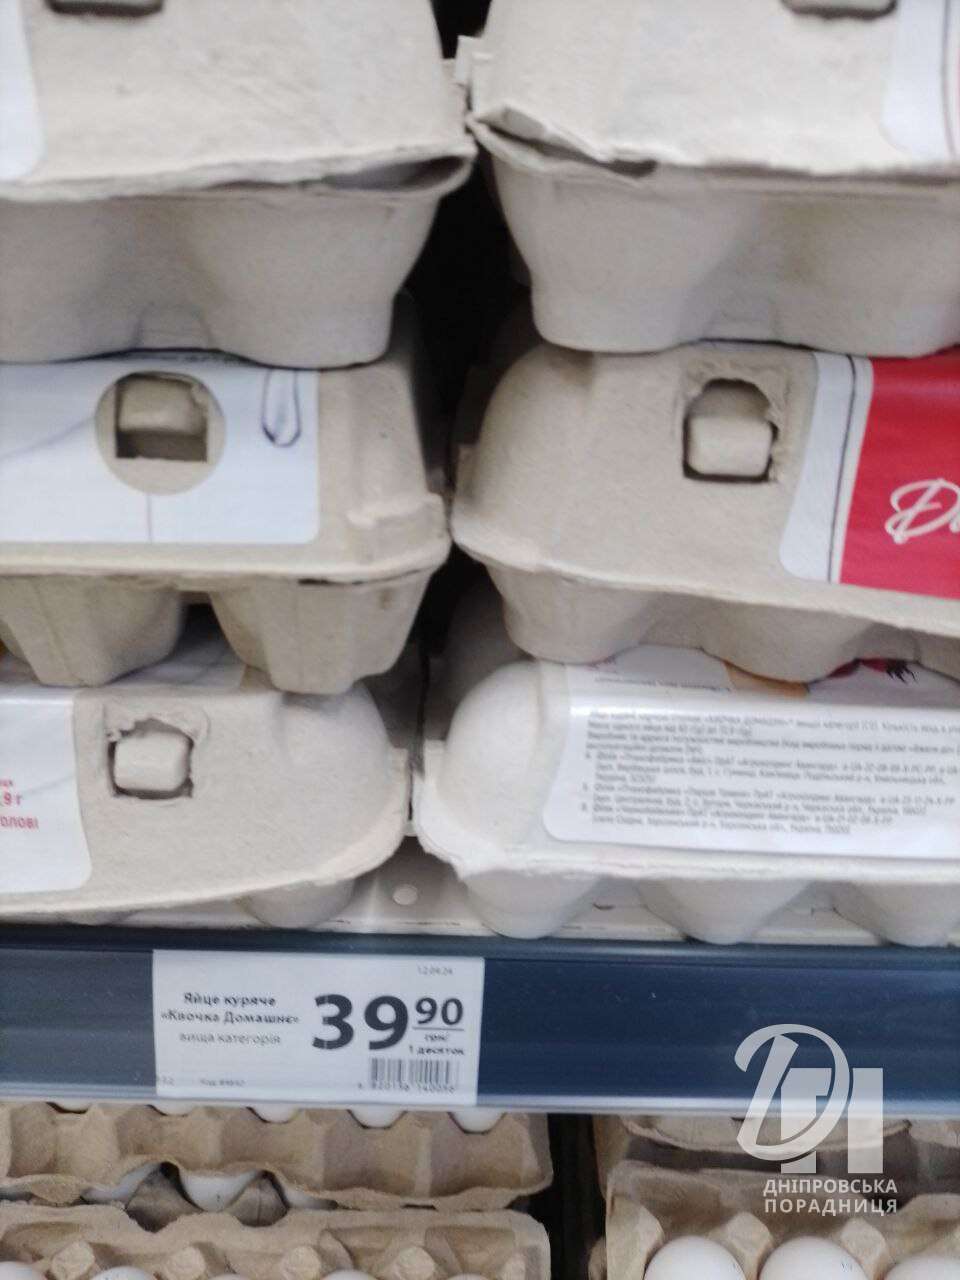 Цены на яйца в Днепре